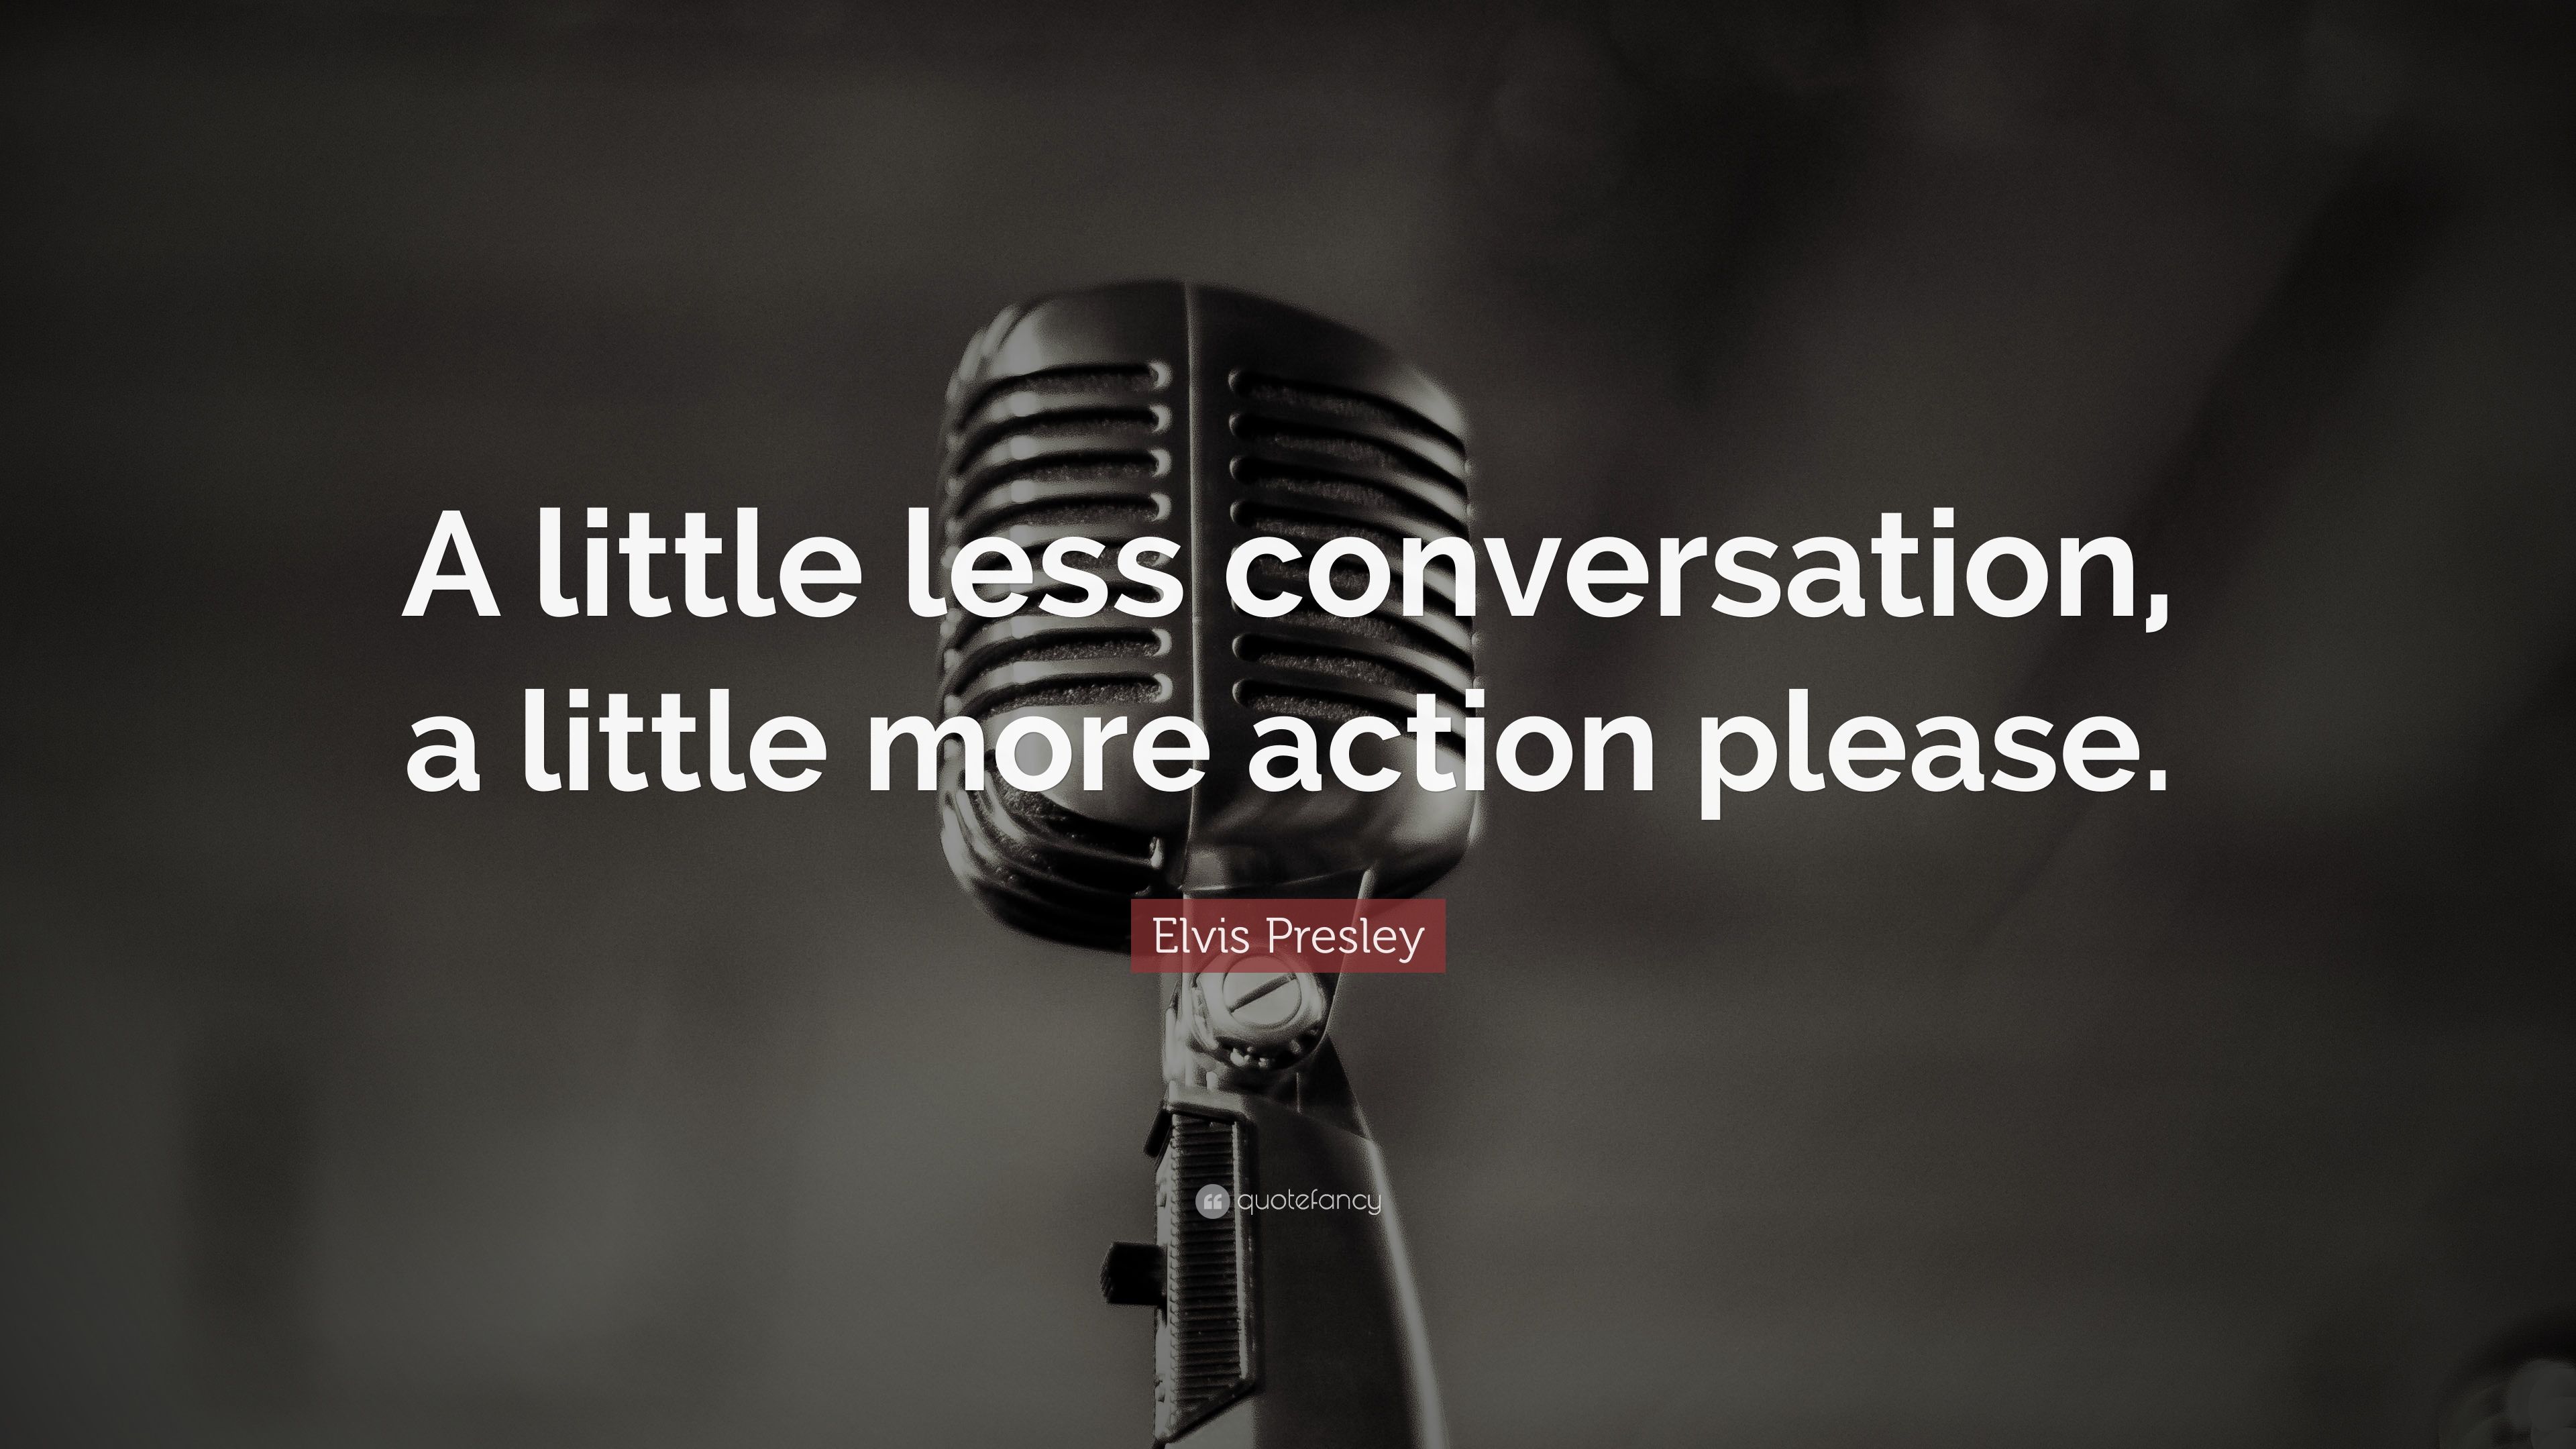 Elvis Presley Quote: “A little less conversation, a little more